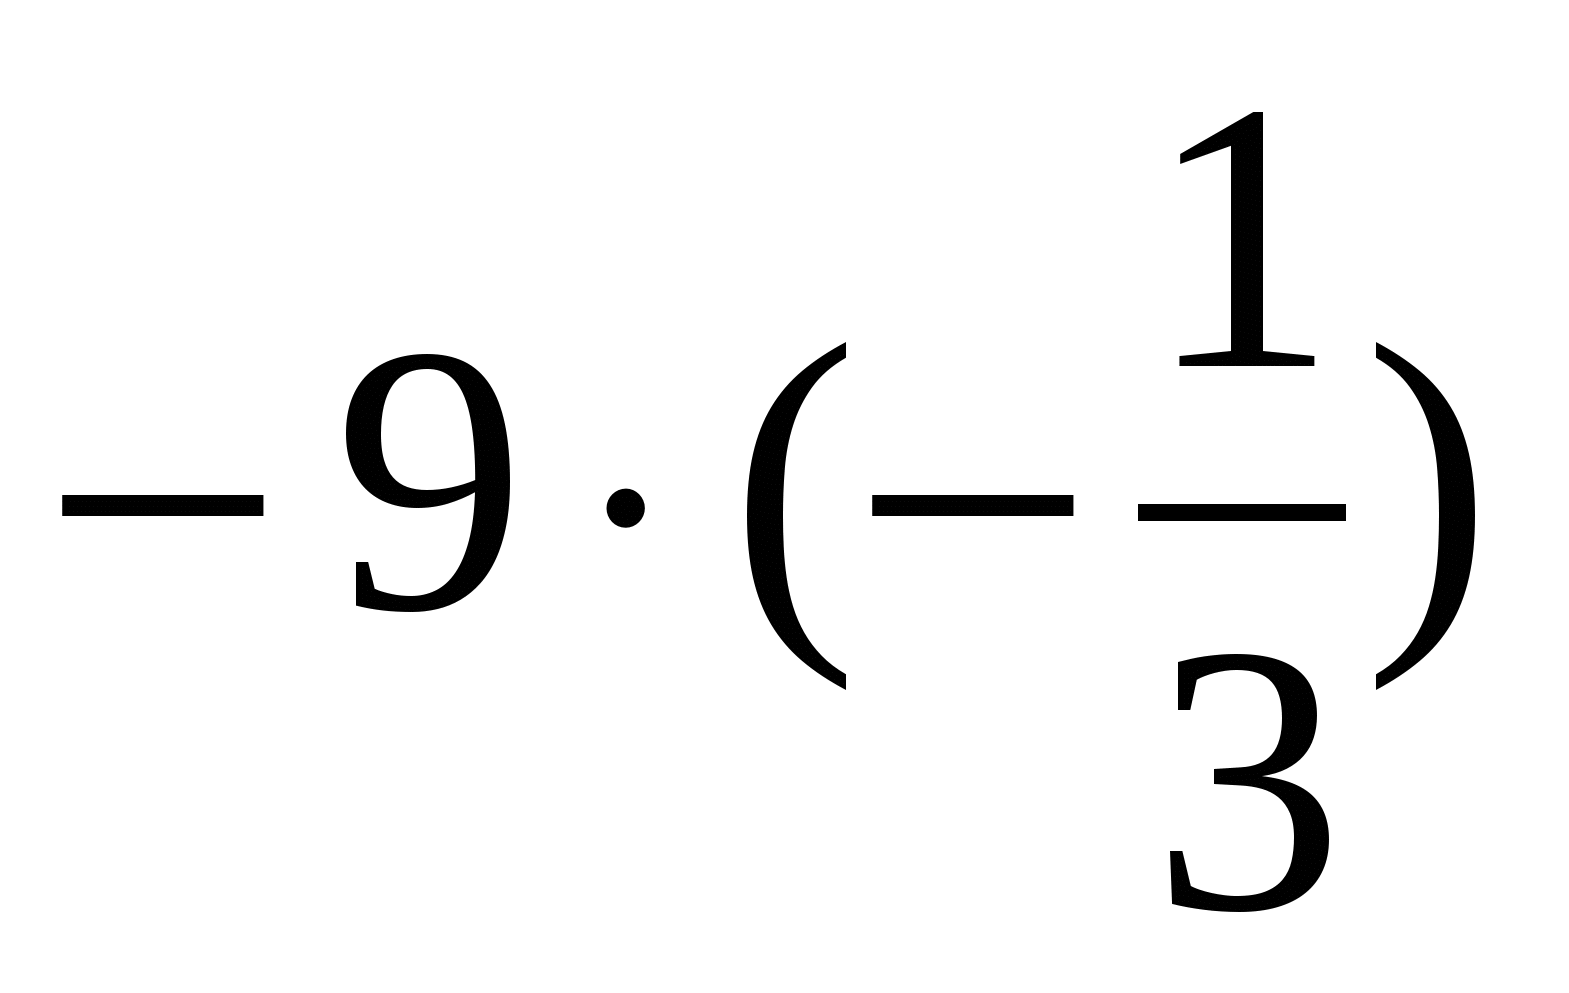 Мастер-класс Умножение рациональных чисел (6 класс)